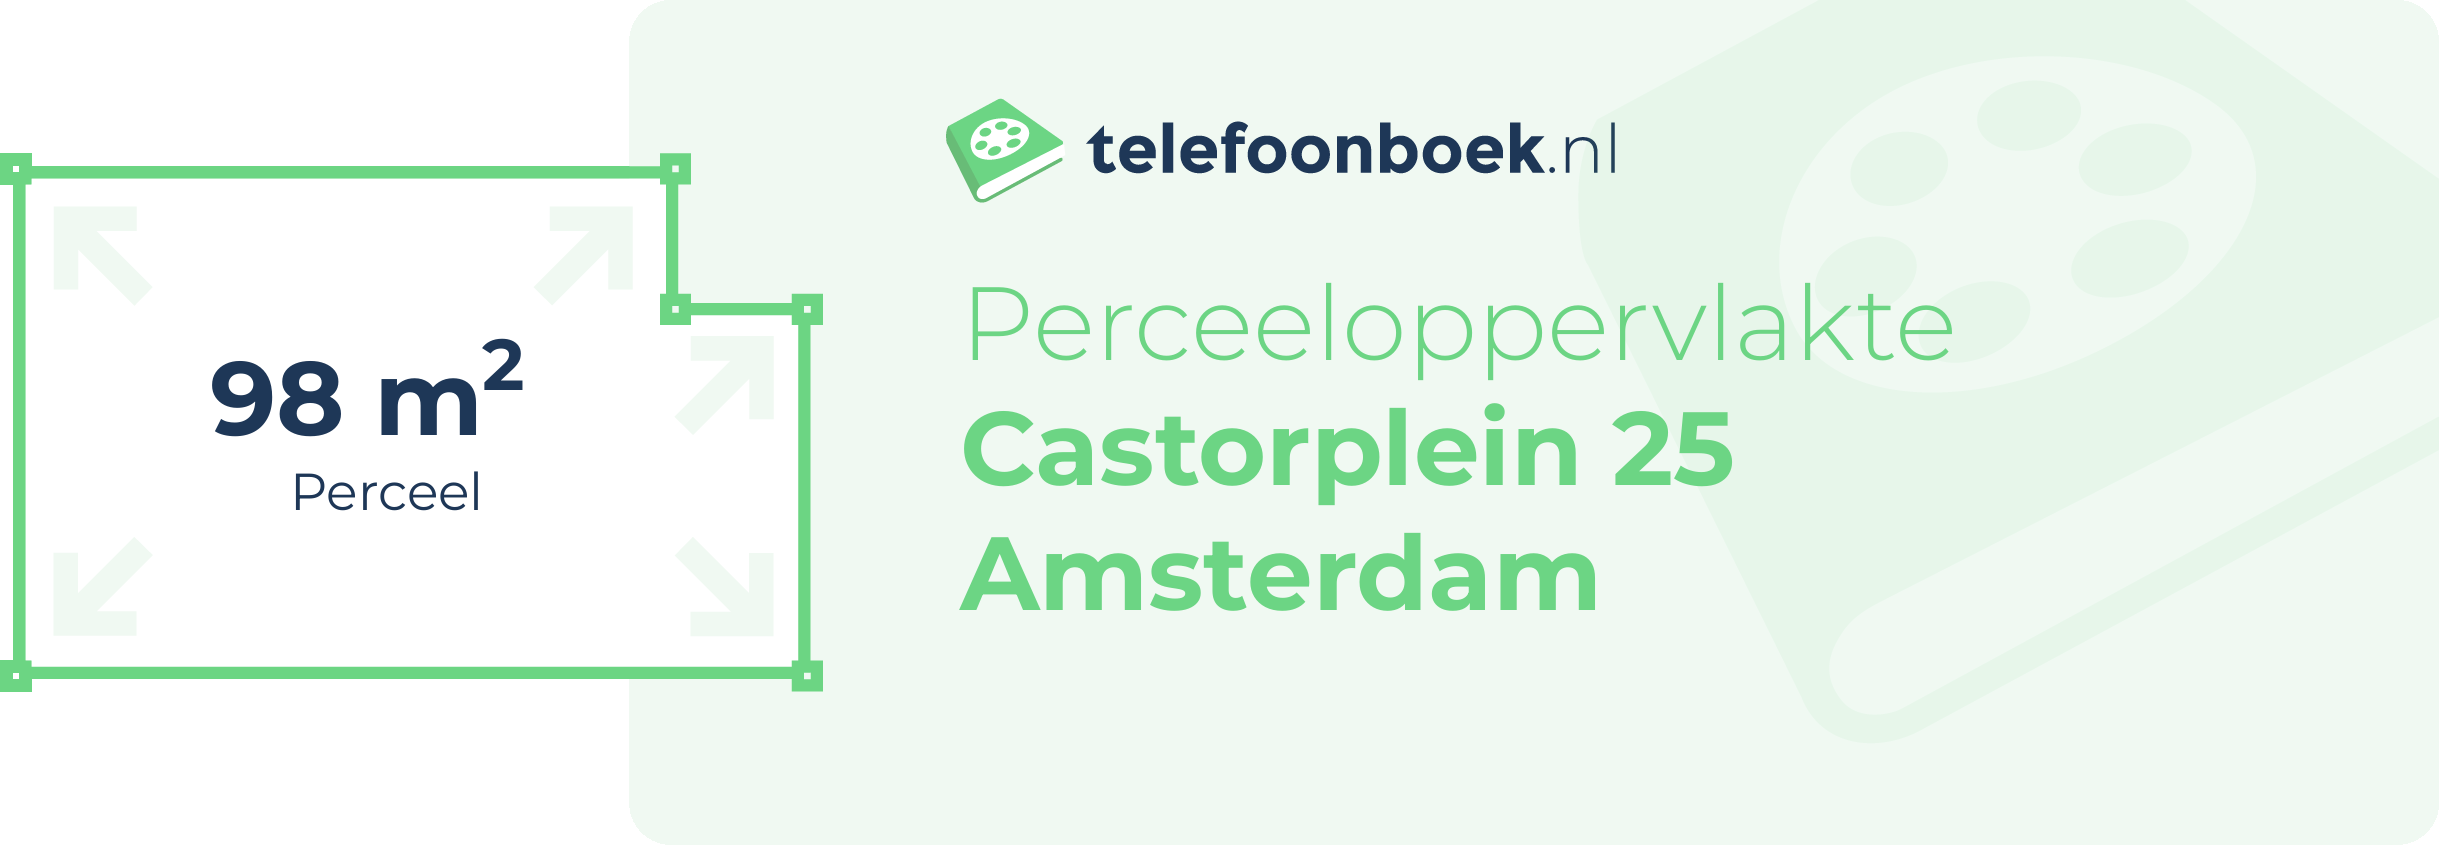 Perceeloppervlakte Castorplein 25 Amsterdam